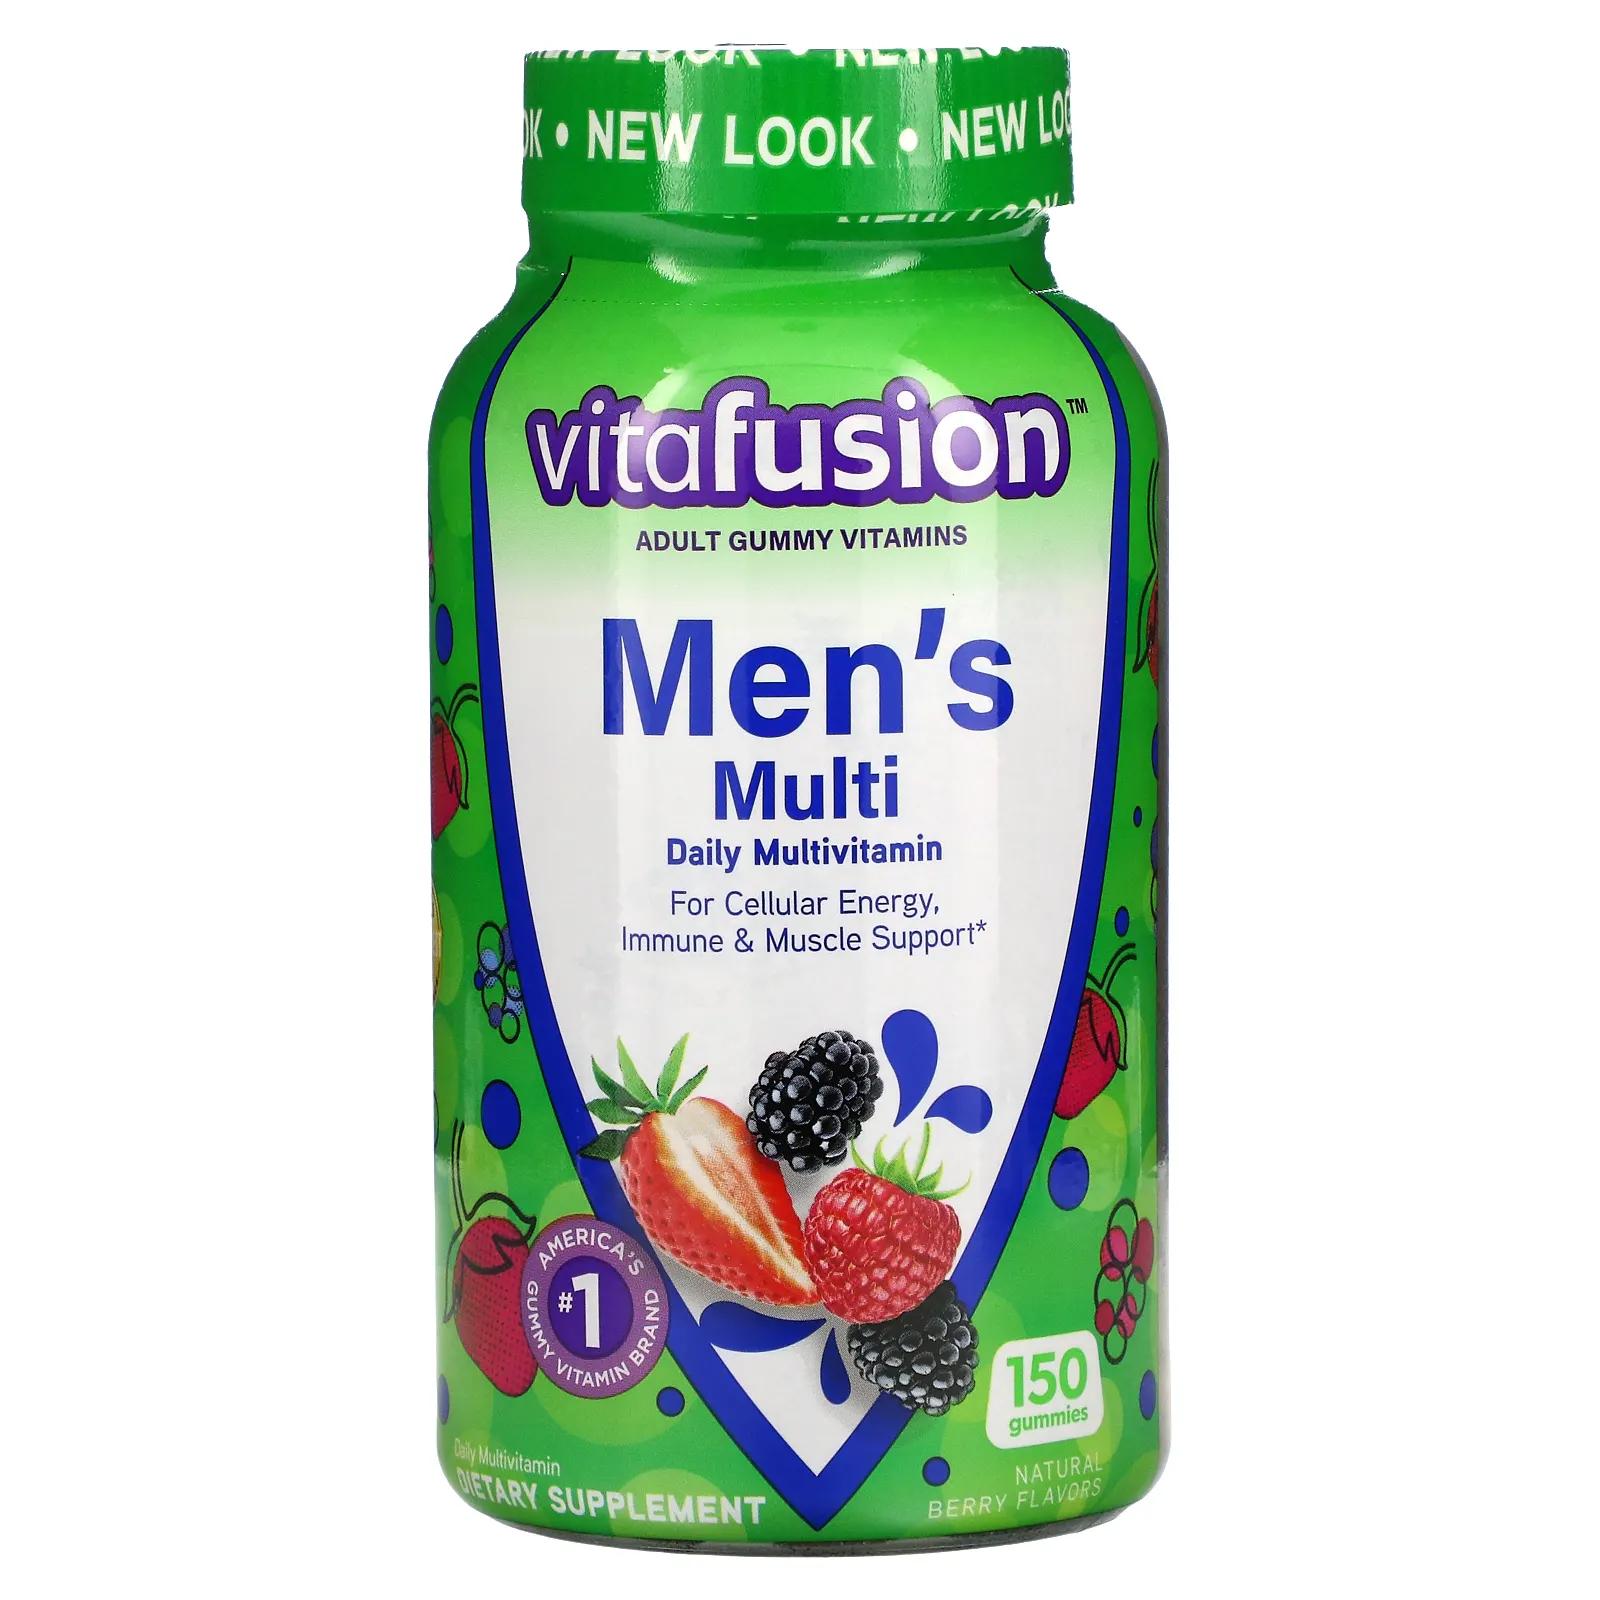 VitaFusion Комплексные мультивитамины для мужчин натуральные ягодные вкусы 150 жевательных таблеток vitafusion комплексные мультивитамины для мужчин натуральные ягодные вкусы 150 жевательных таблеток